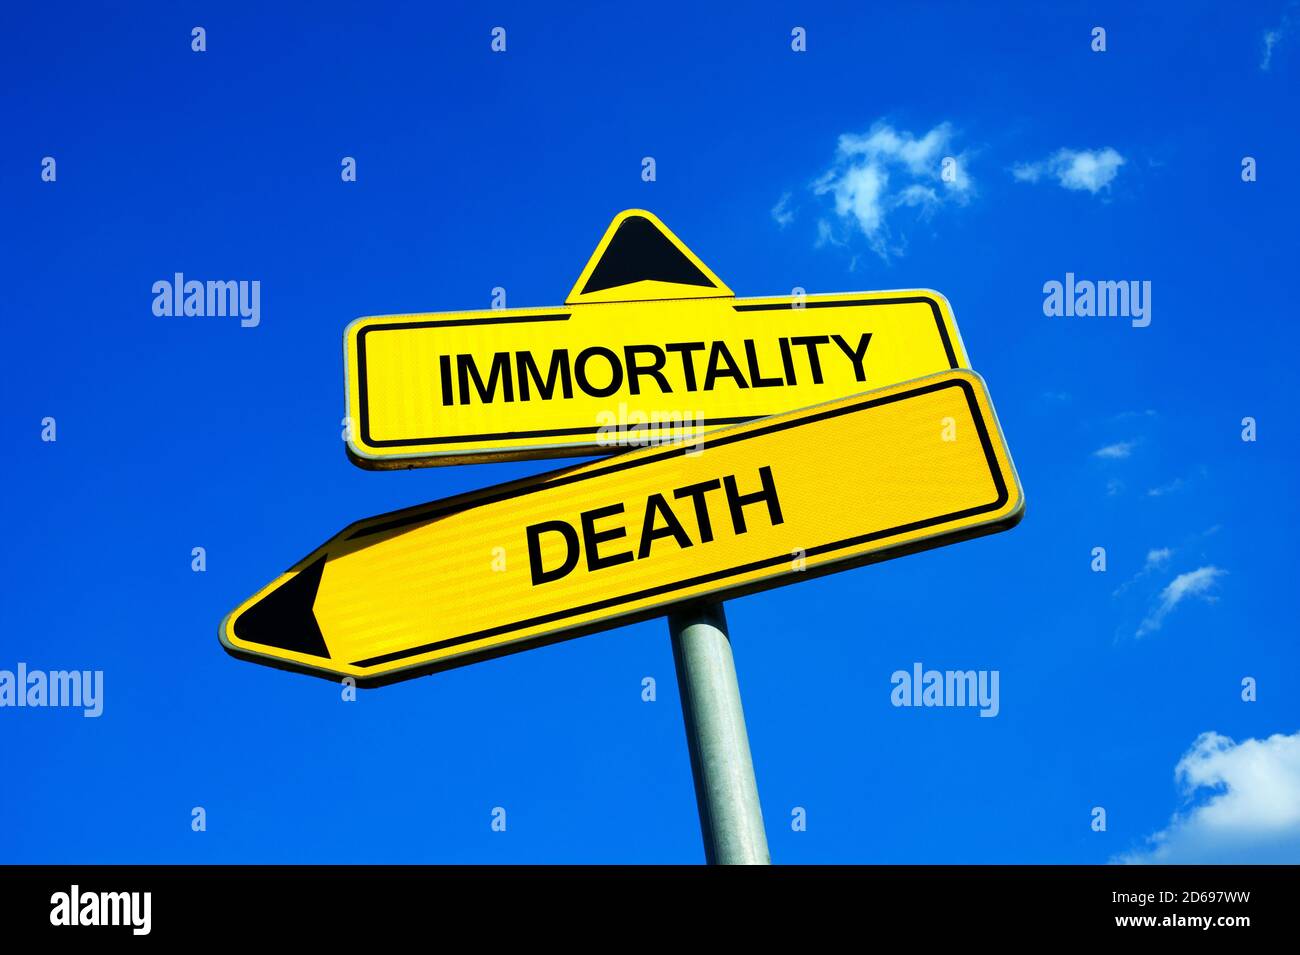 Unsterblichkeit vs Tod - Verkehrszeichen mit zwei Optionen - Sterblichkeit, Altern und Lebensende vs Langlebigkeit, Verjüngung, ewiges Leben. Frage der Medizin Stockfoto